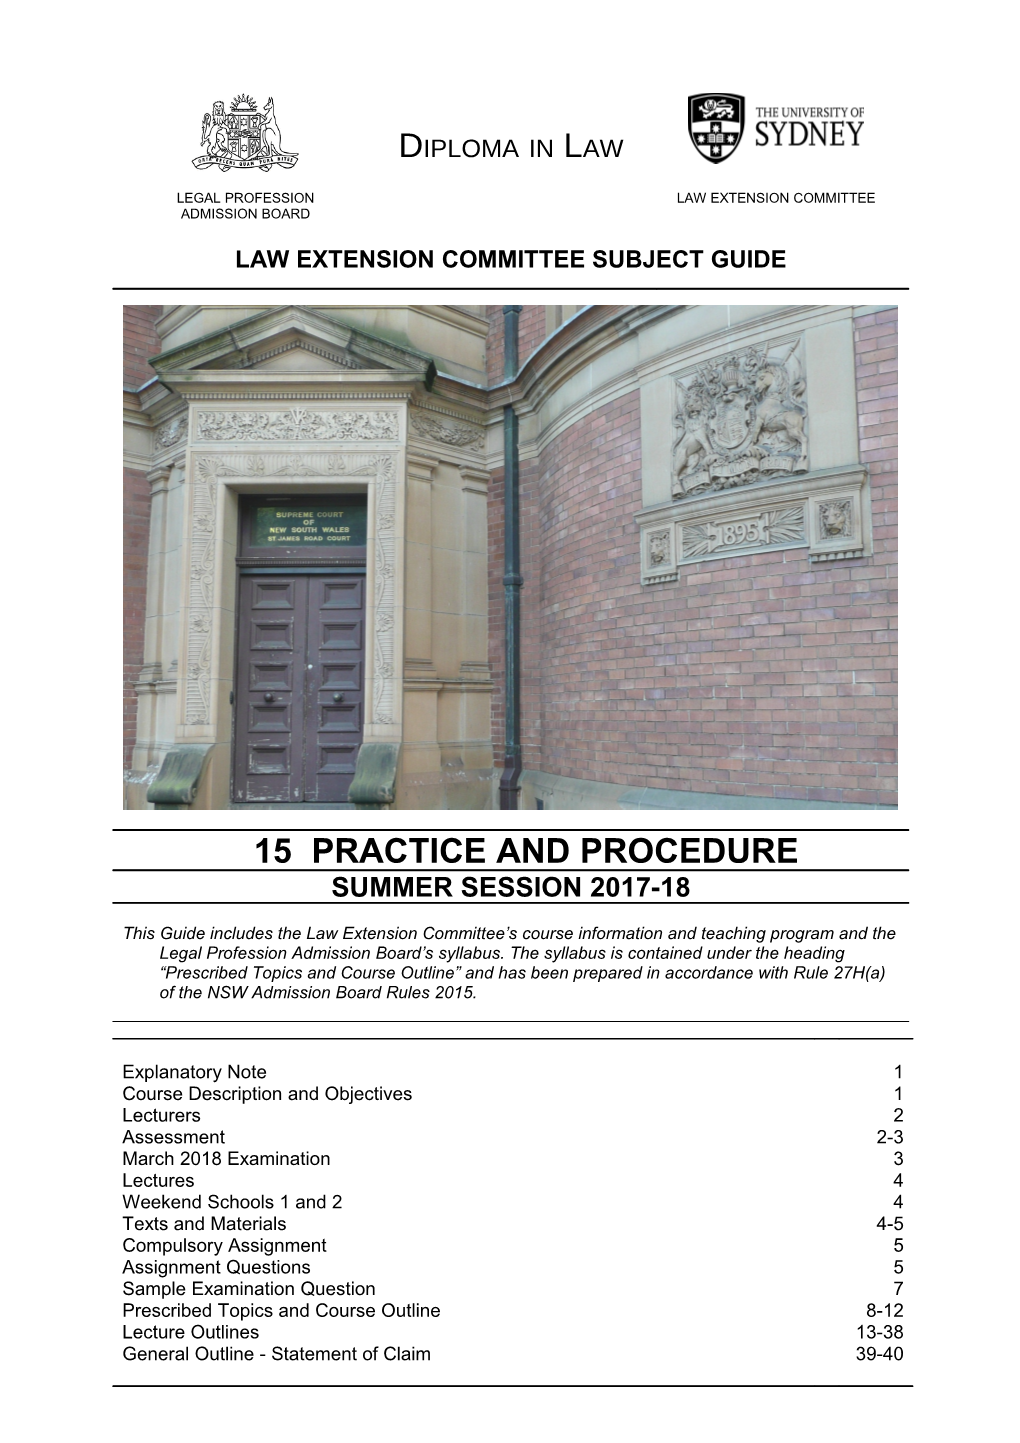 LEC Practice and Procedure